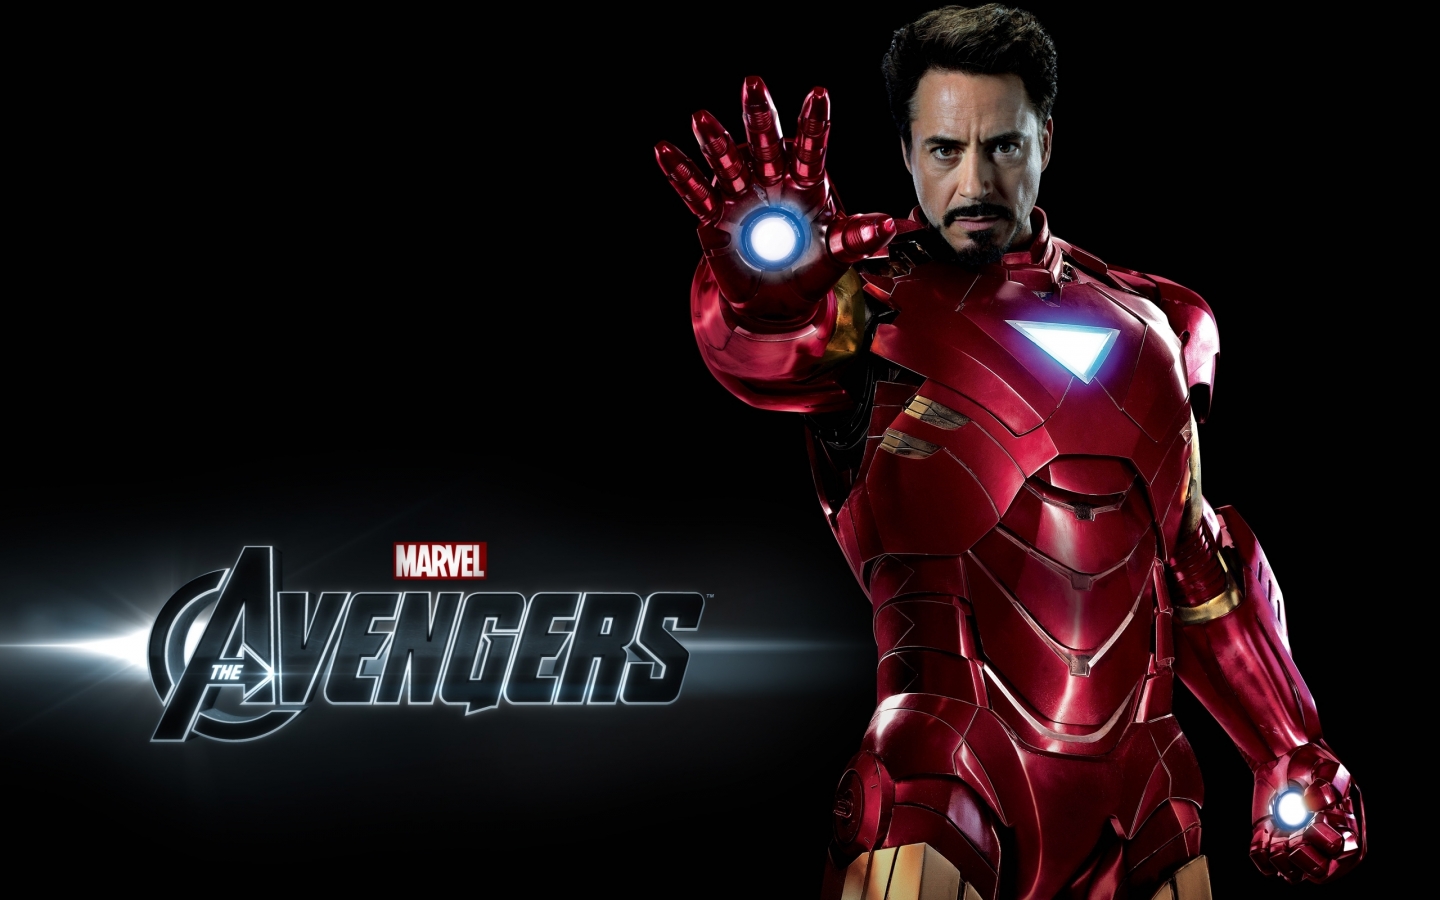 Avengers Iron Man for 1440 x 900 widescreen resolution